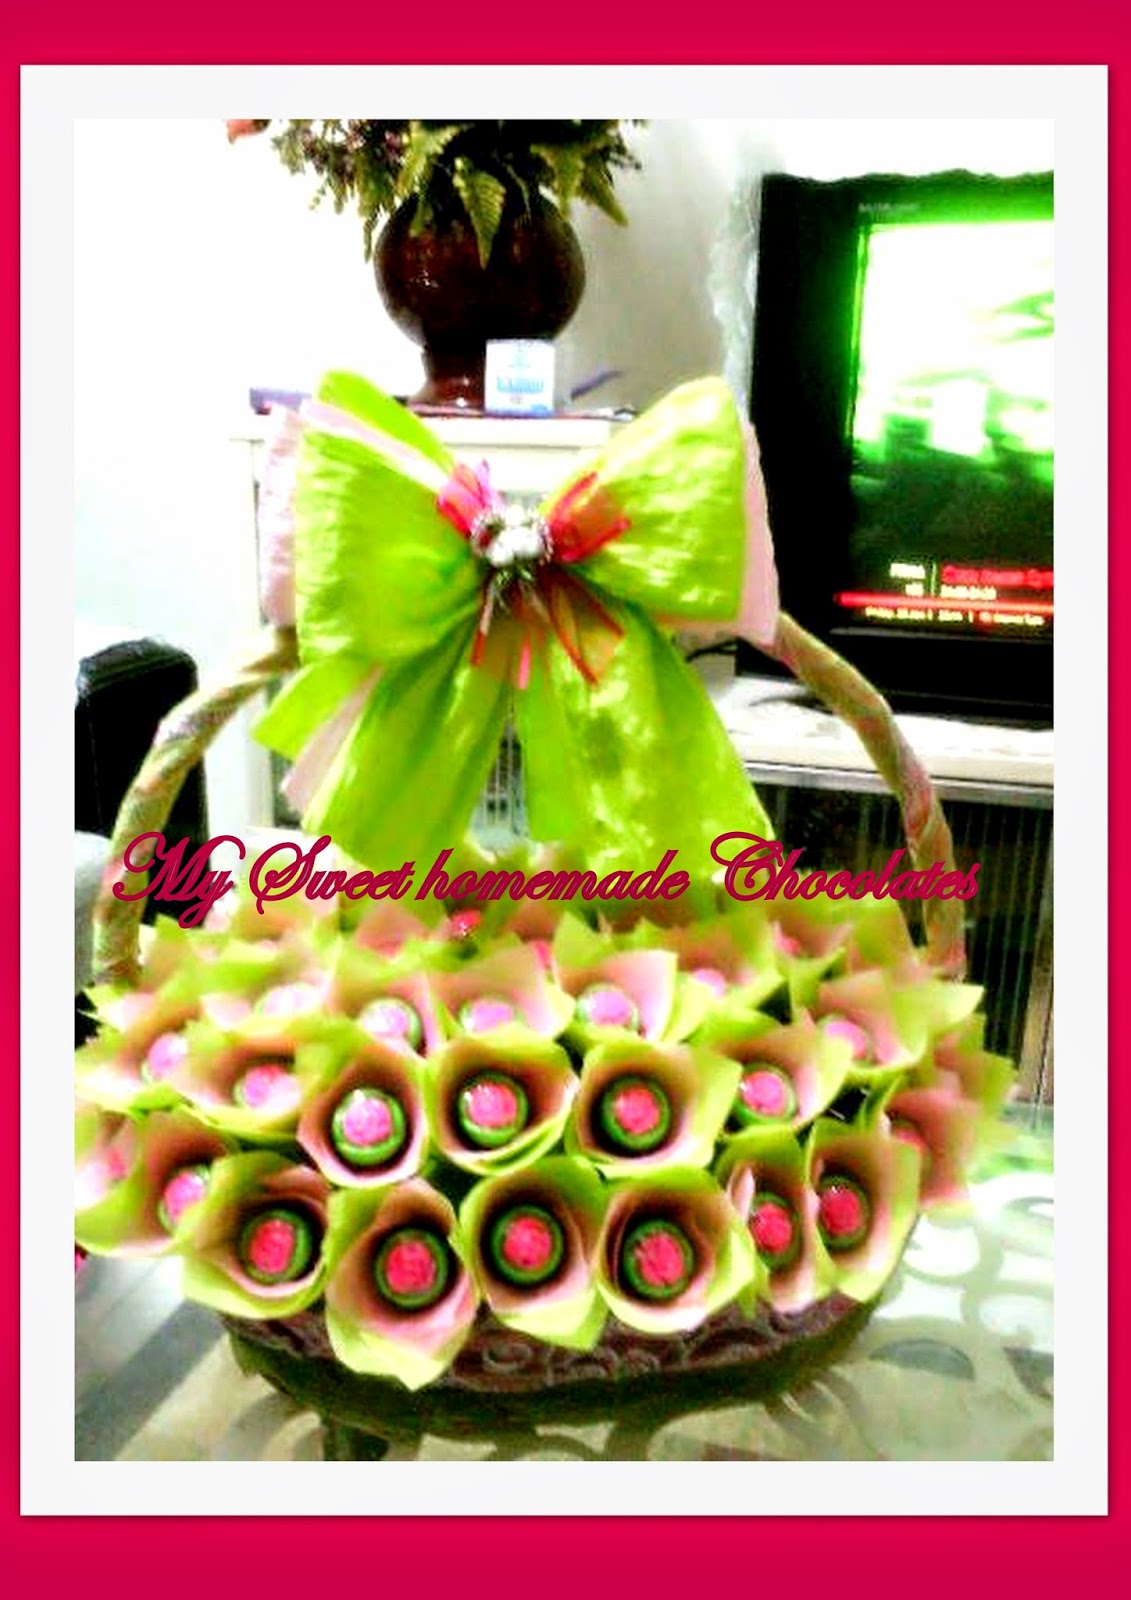 Sweet Homemade chocs: Bouquet coklat hantaran dalam bakul.. ;-)